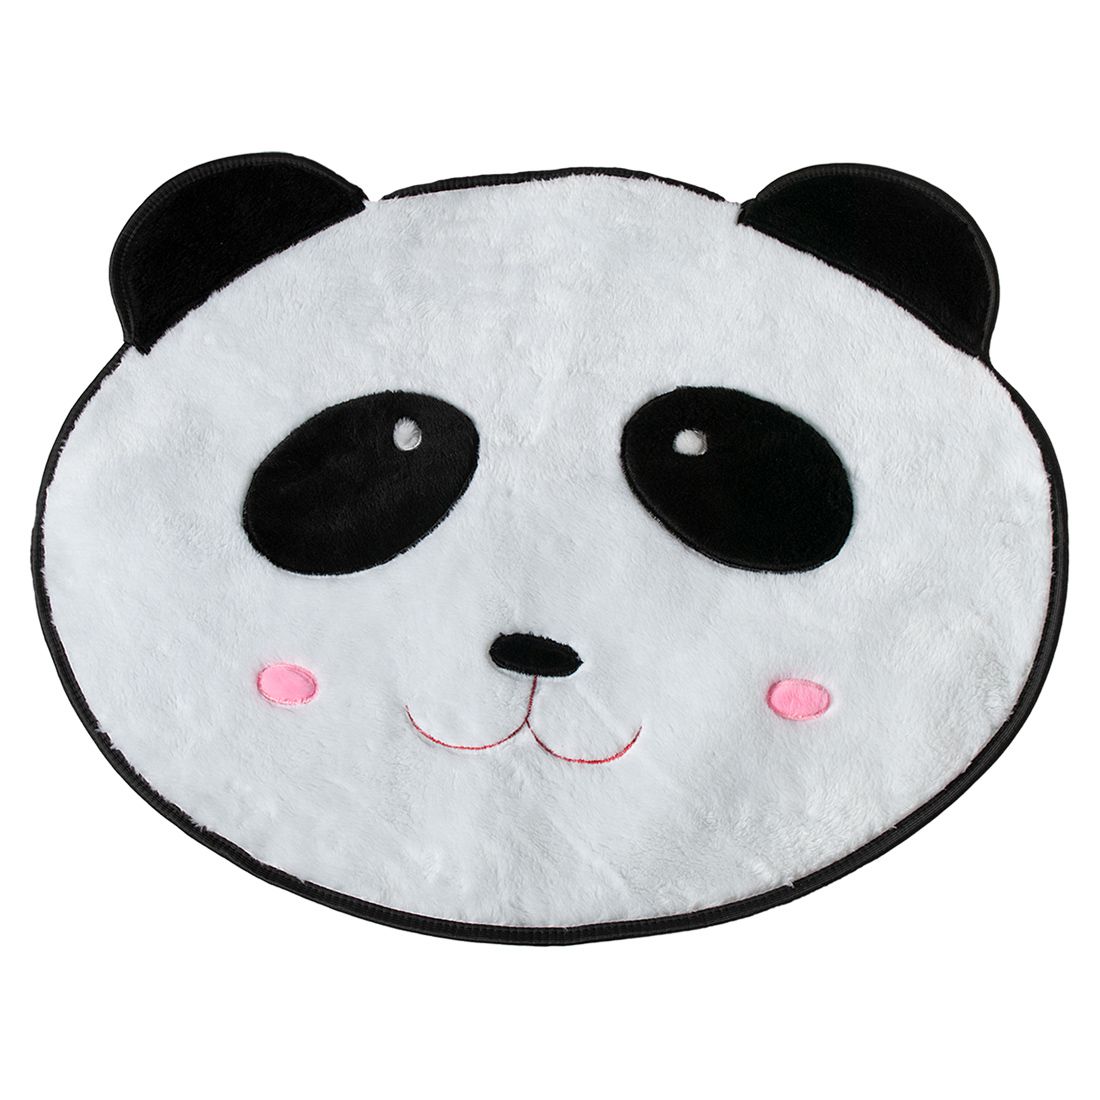 Tapete Infantil Premium Formato Panda Branco/Preto 74cm x 64cm